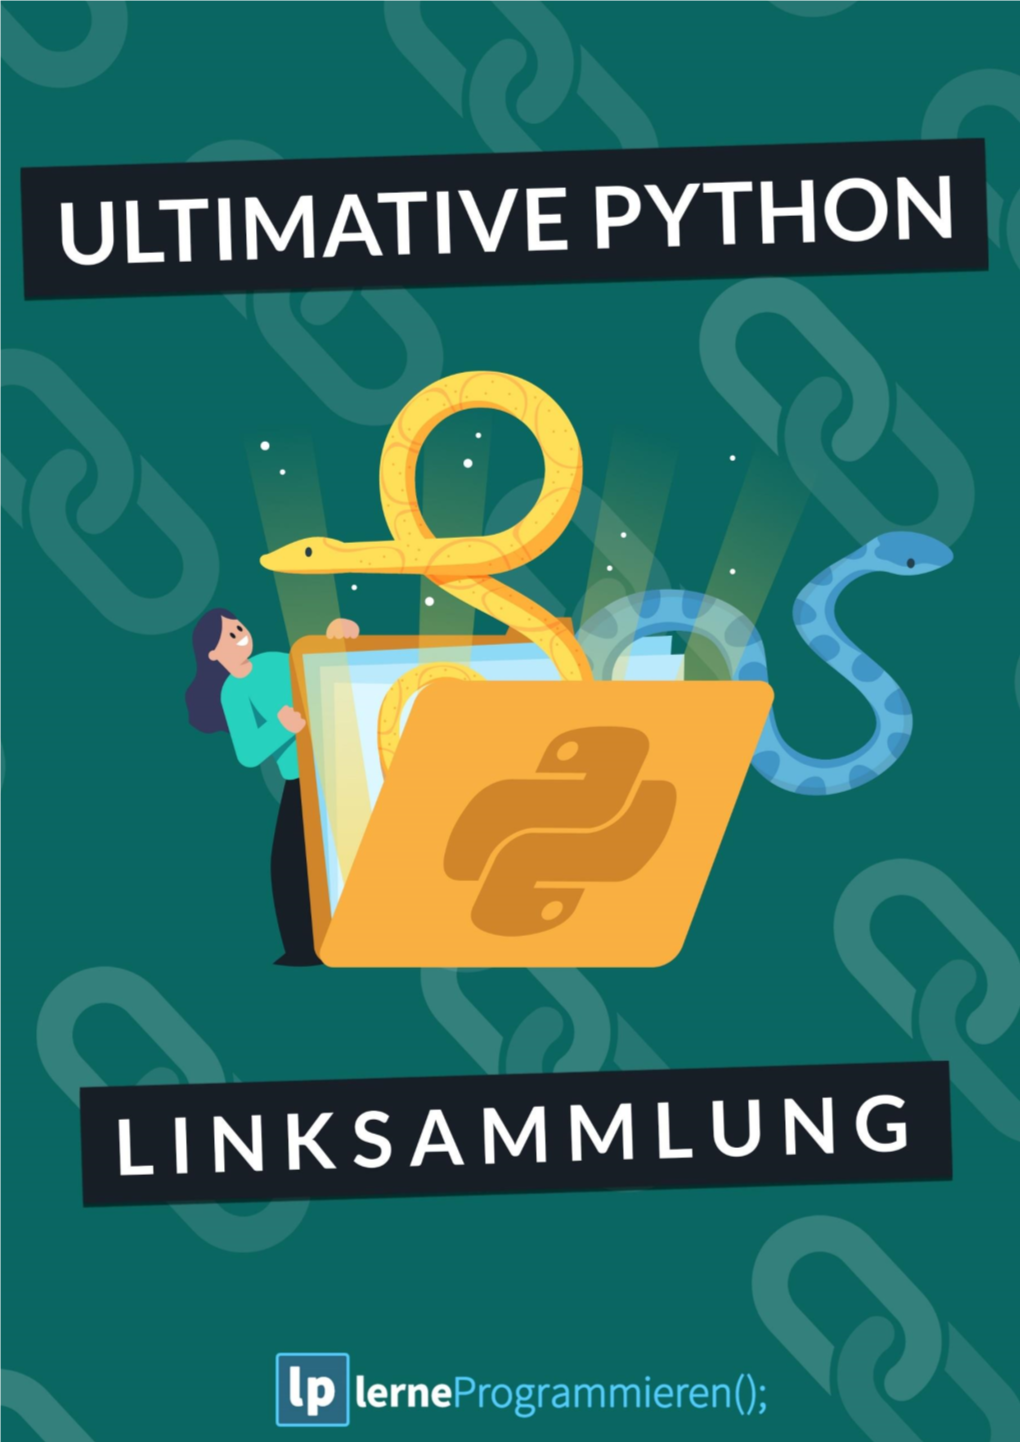 2020 Python Einfach Lernen (Klicke Hier)